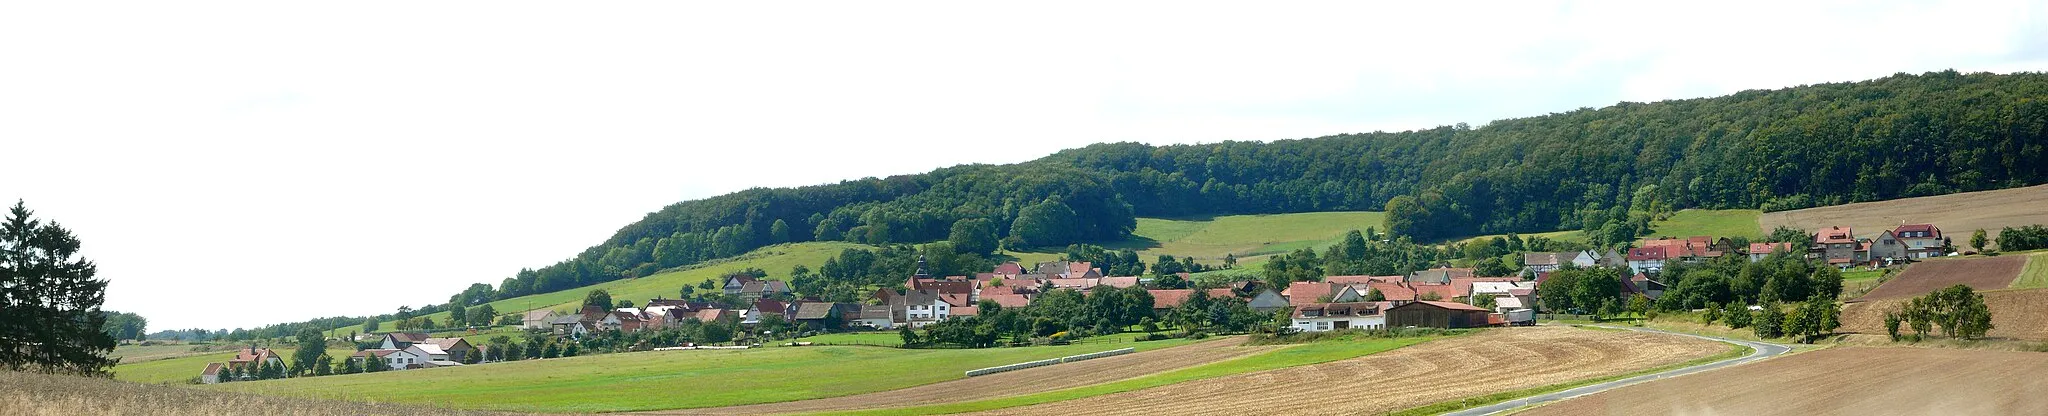 Photo showing: Blick von Osten auf Rohrberg, Landkreis Eichsfeld, Thüringen. Hinten der Mädchenberg (Bildmitte) und der Rohrberg (rechts). Panoramaaufnahme